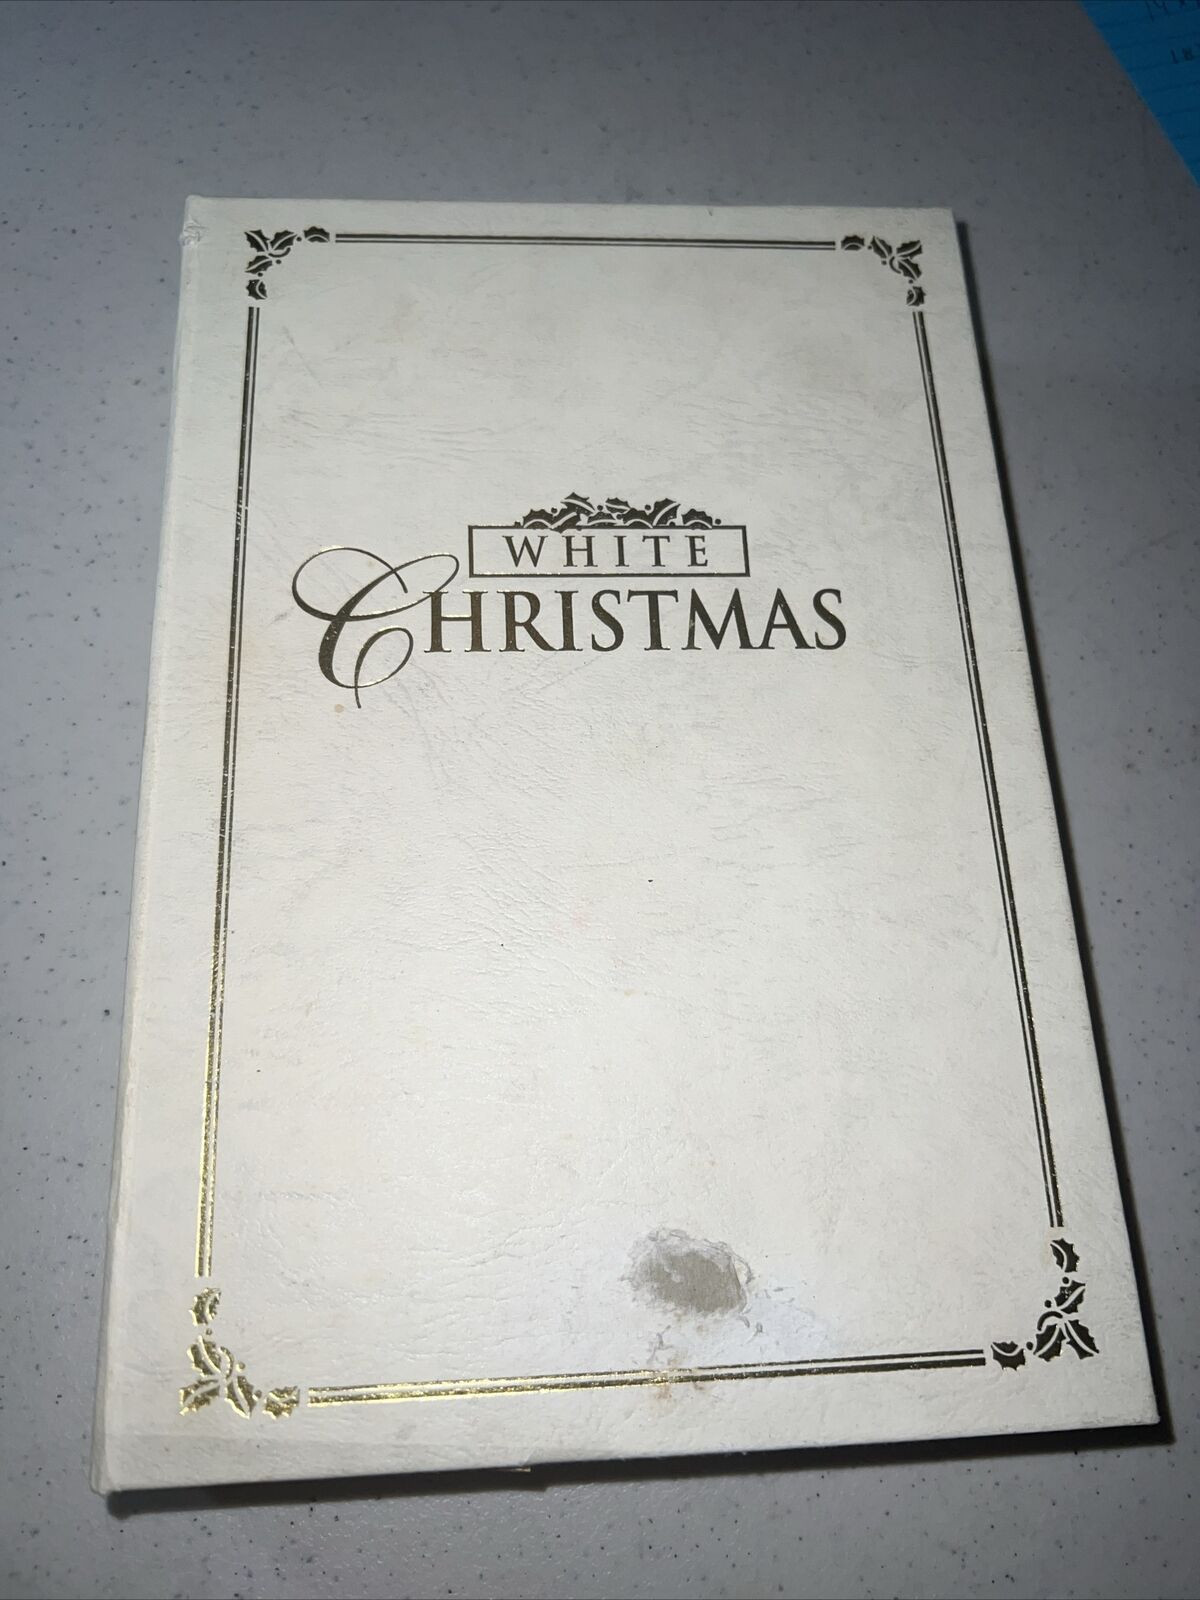 Mr. Christmas 2001 Animated Musical Book - White Christmas rare